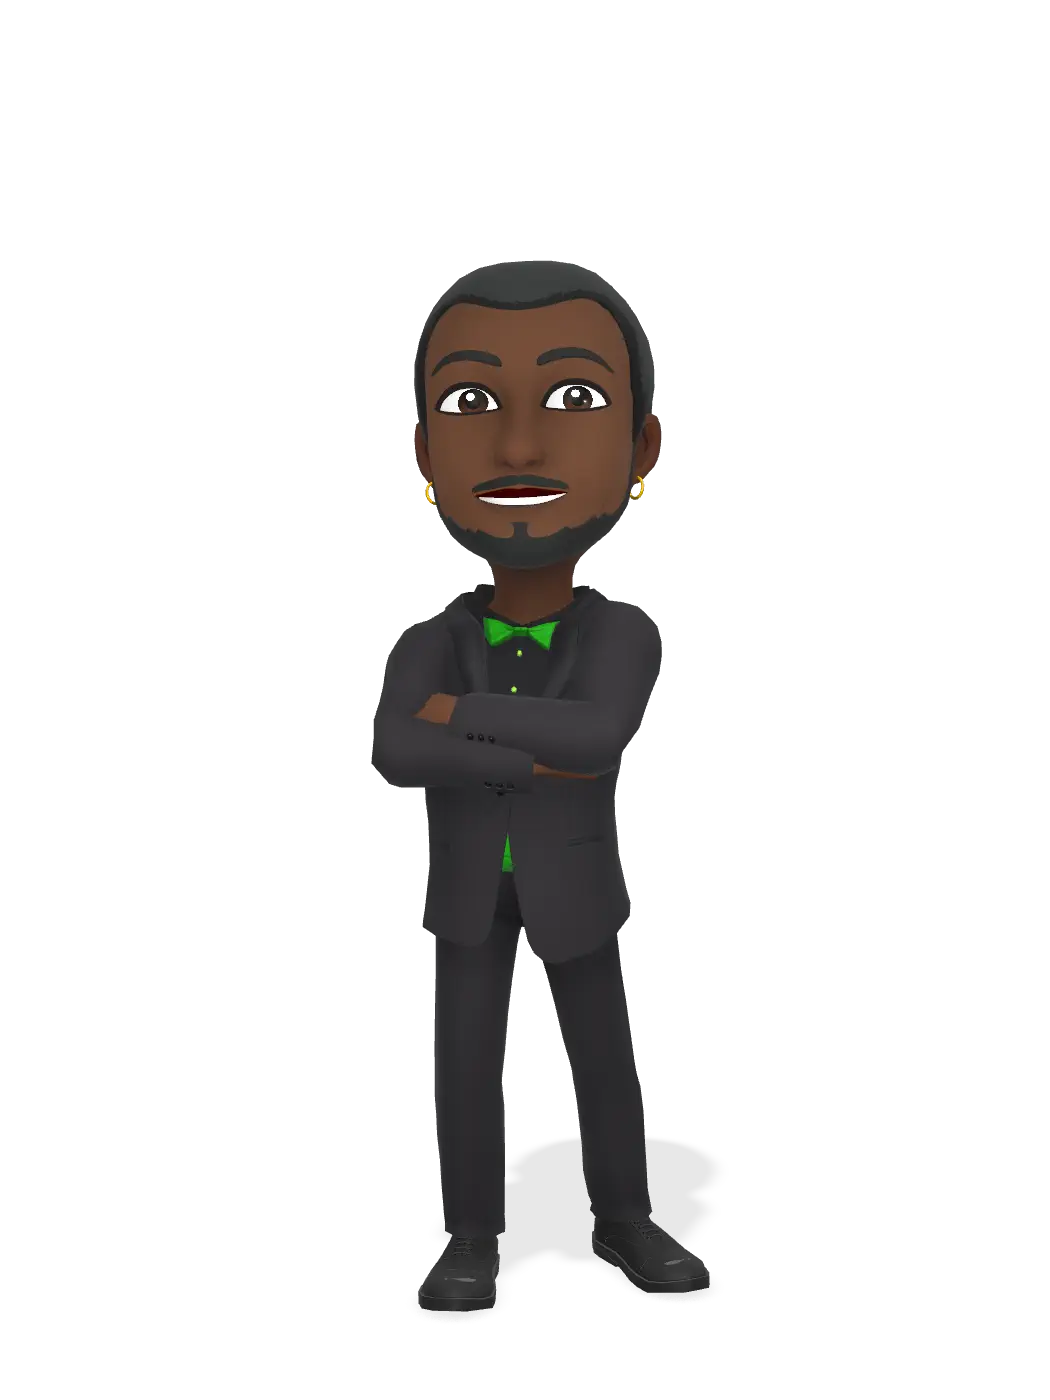 3D Bitmoji for businesshgr avatar